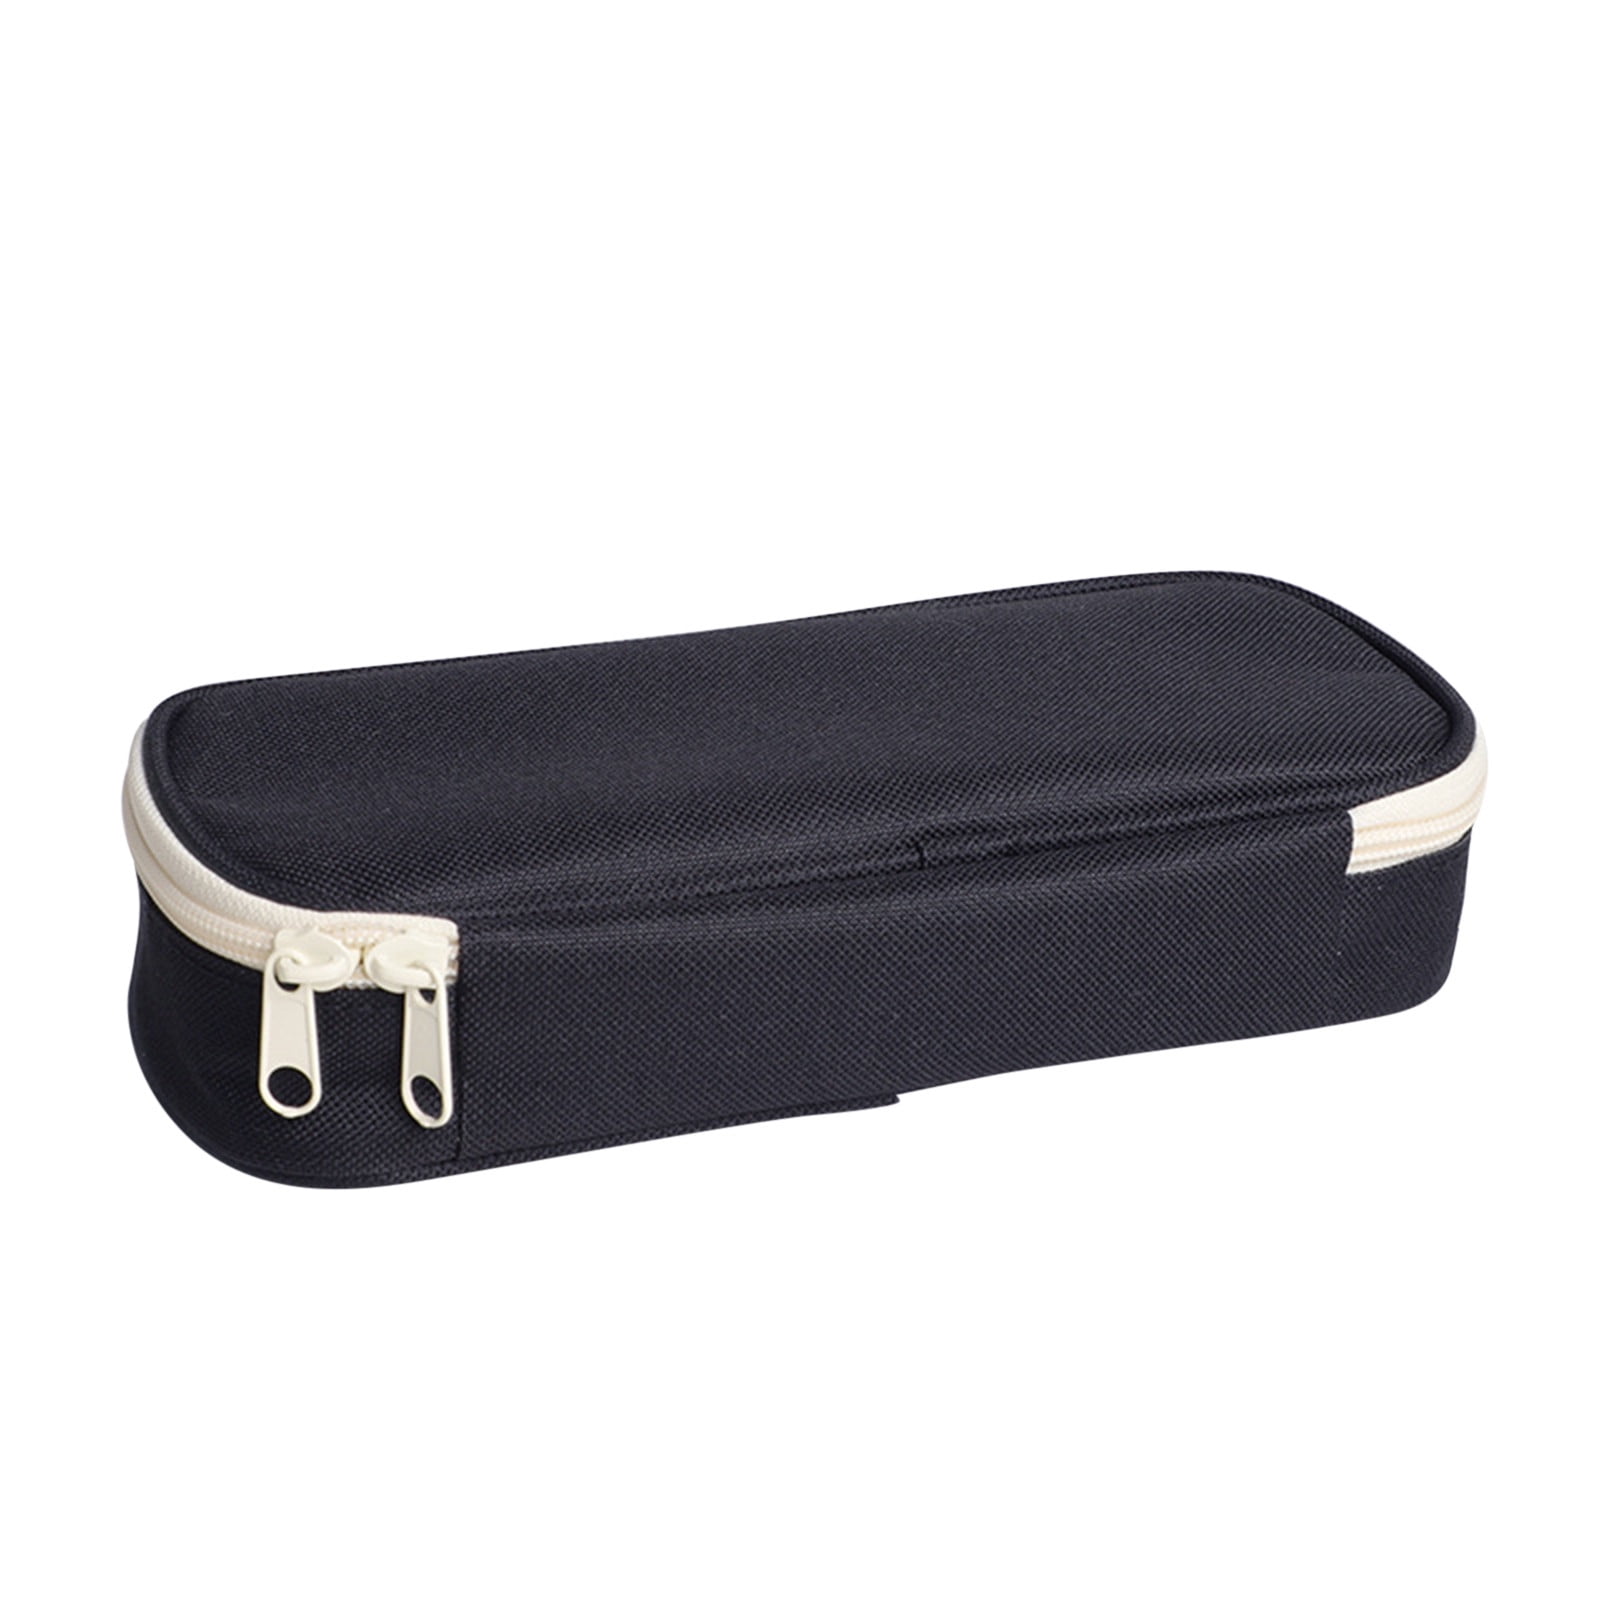 Black Pencil Case VER.1 / Pen Case / Pencil Pouch / Pen Pouch / Zipper  Pouch / Zipper Bag / Makeup Bag / Makeup Pouch / School Supplies 